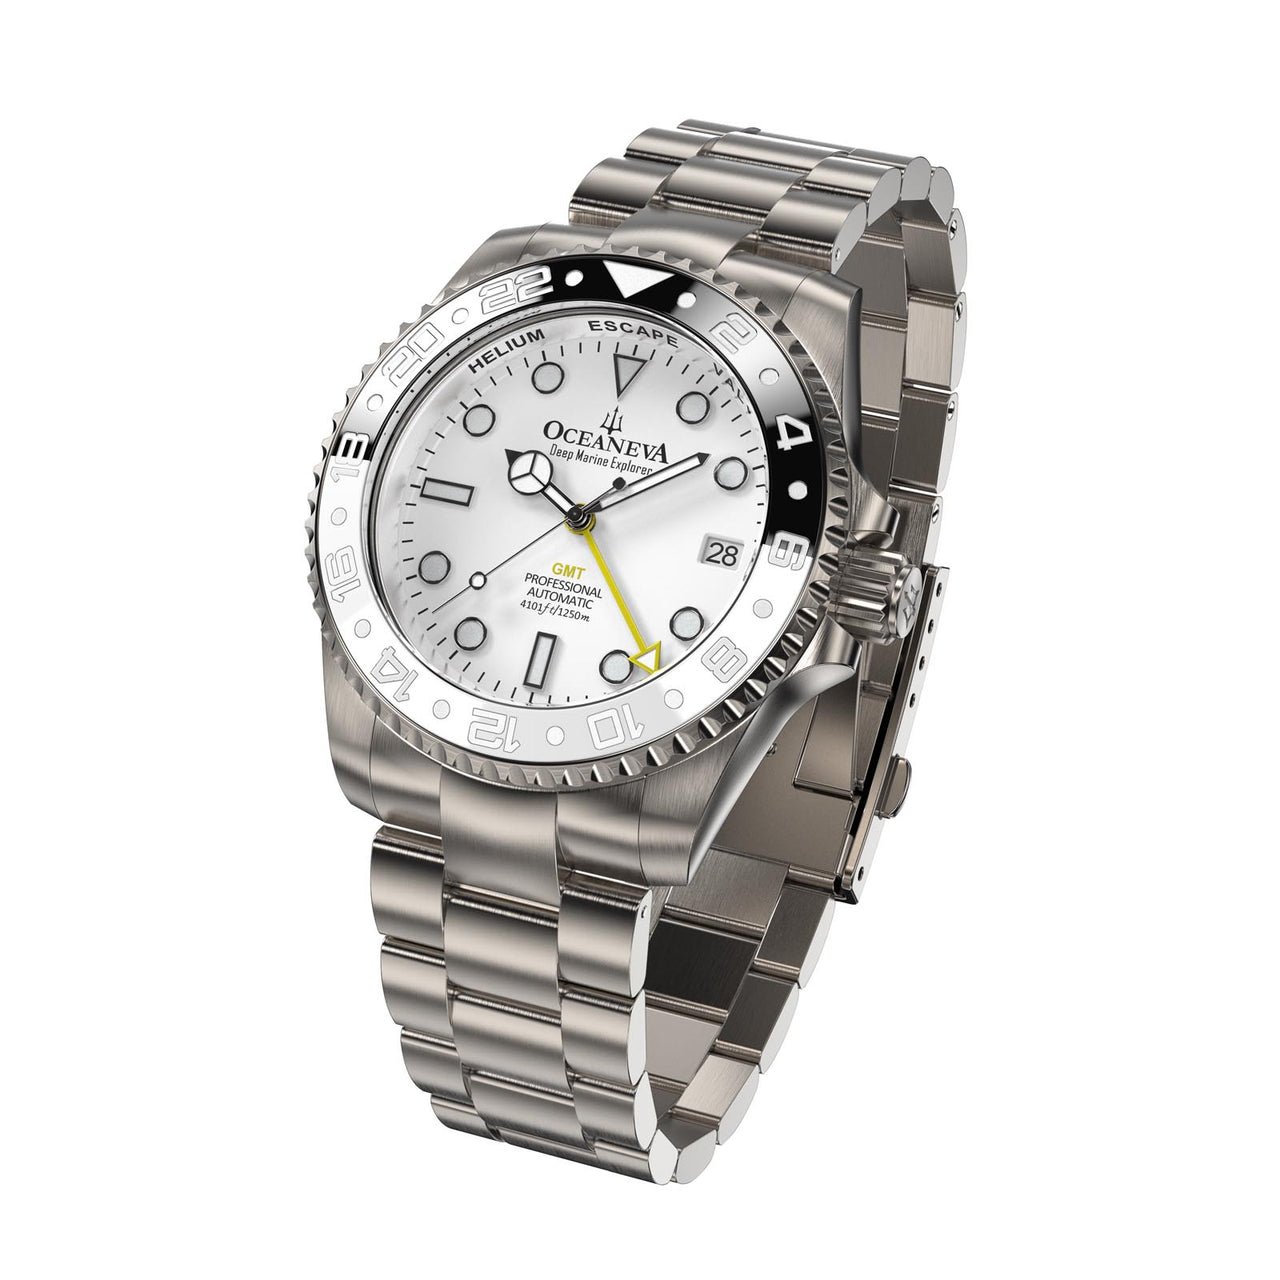 Precision-crafted details on Oceaneva Titanium Watch's ceramic bezel